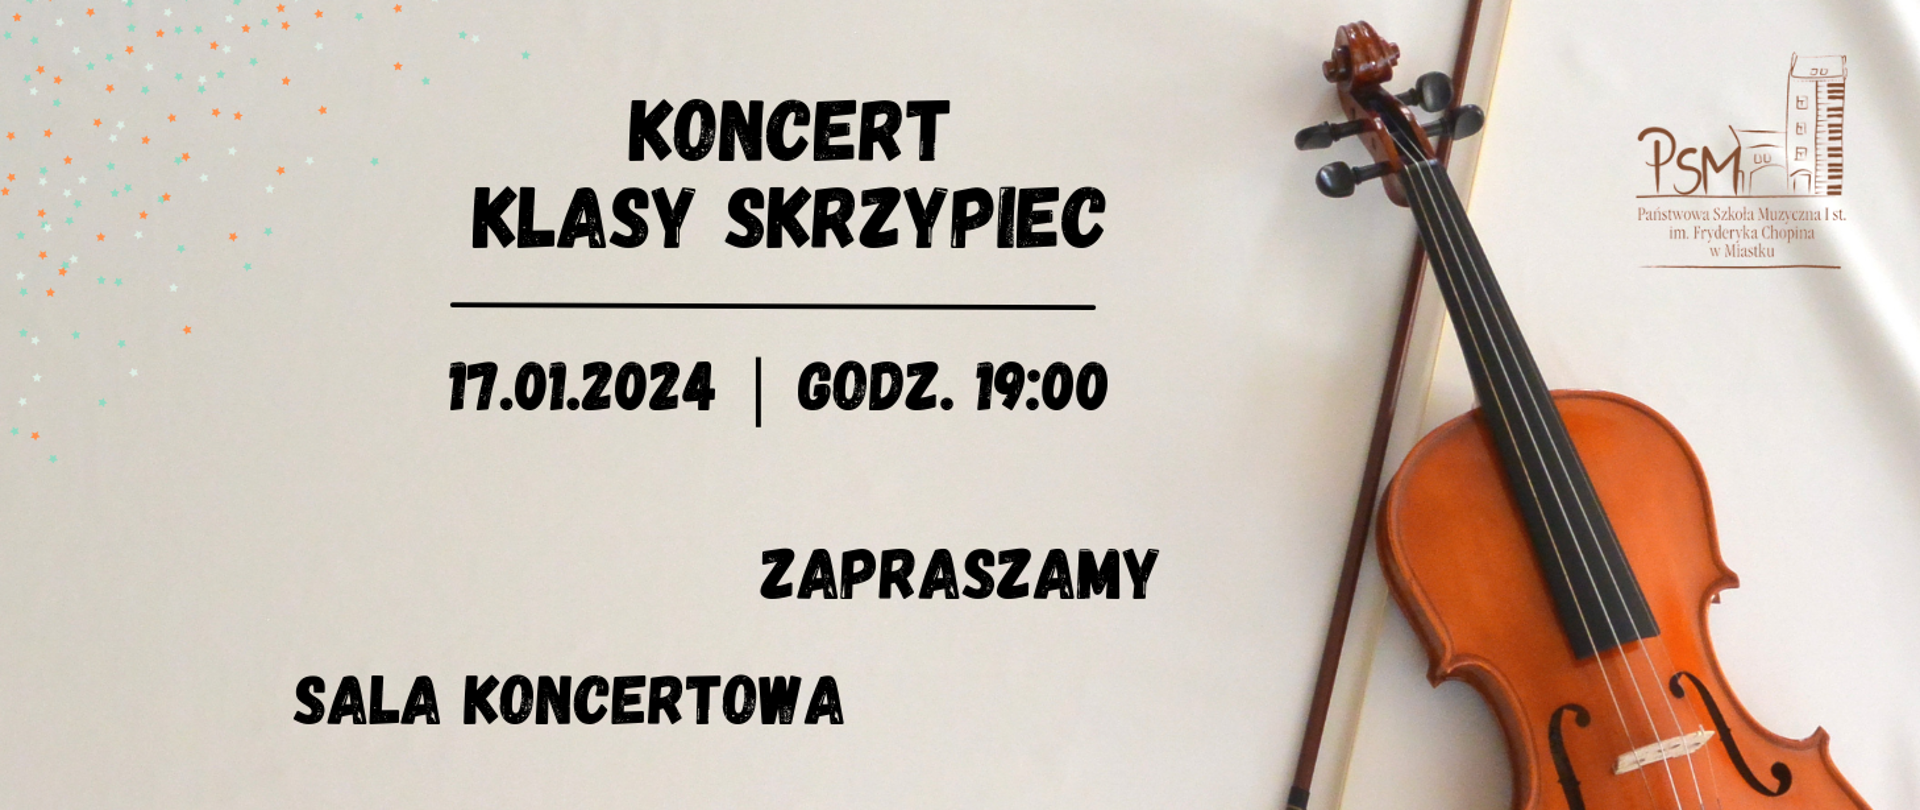 Grafika informująca o koncercie uczniów klasy skrzypiec 17 stycznia 2024 o godz. 19:00 w sali koncertowej naszej szkoły